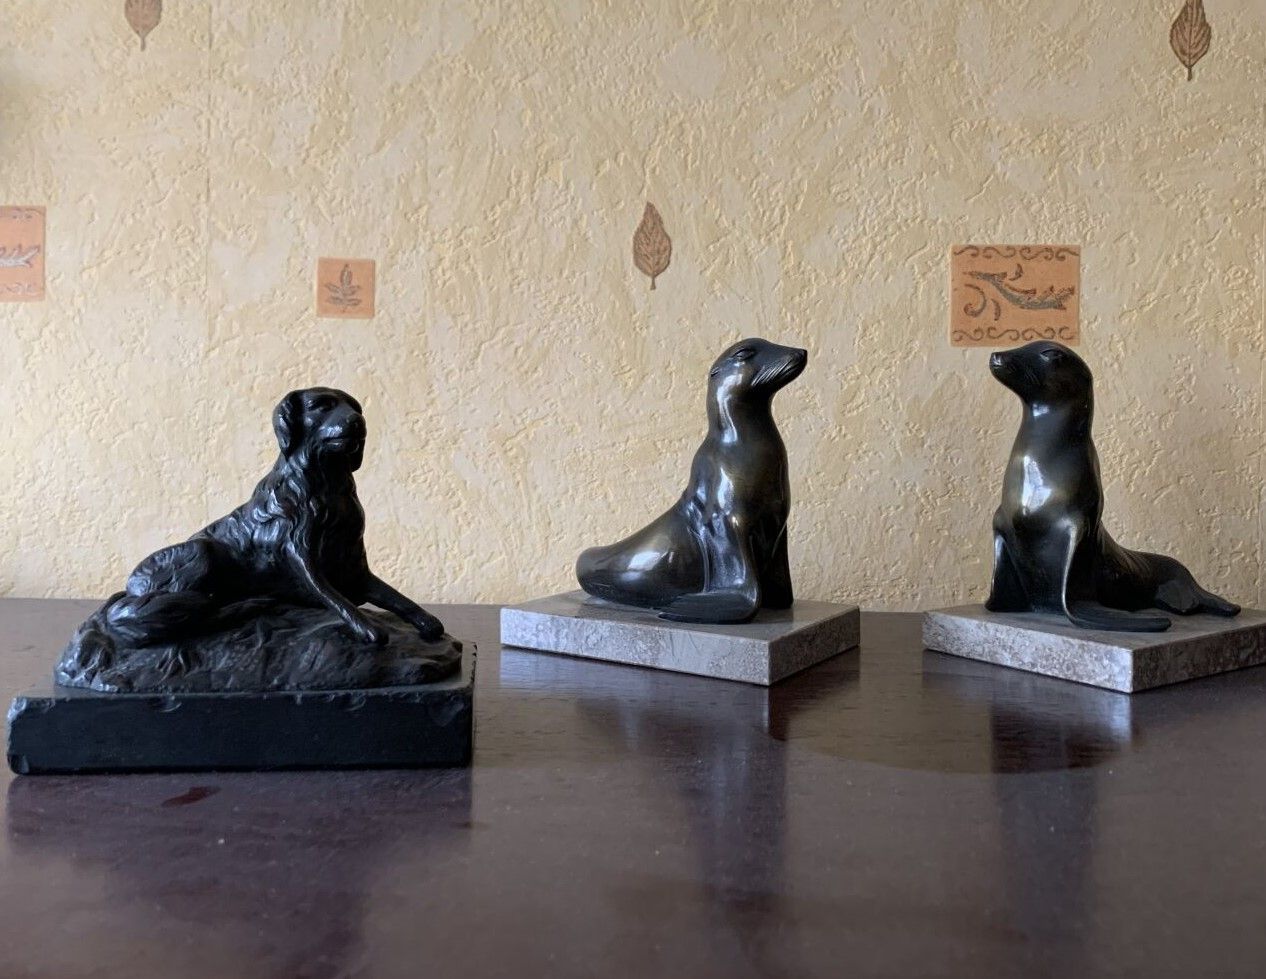 Null 一套雕像包括:
- 一对铜制印章书架，带有棕色的铜锈
- 青铜色的狗，有黑色的铜锈
20世纪的作品